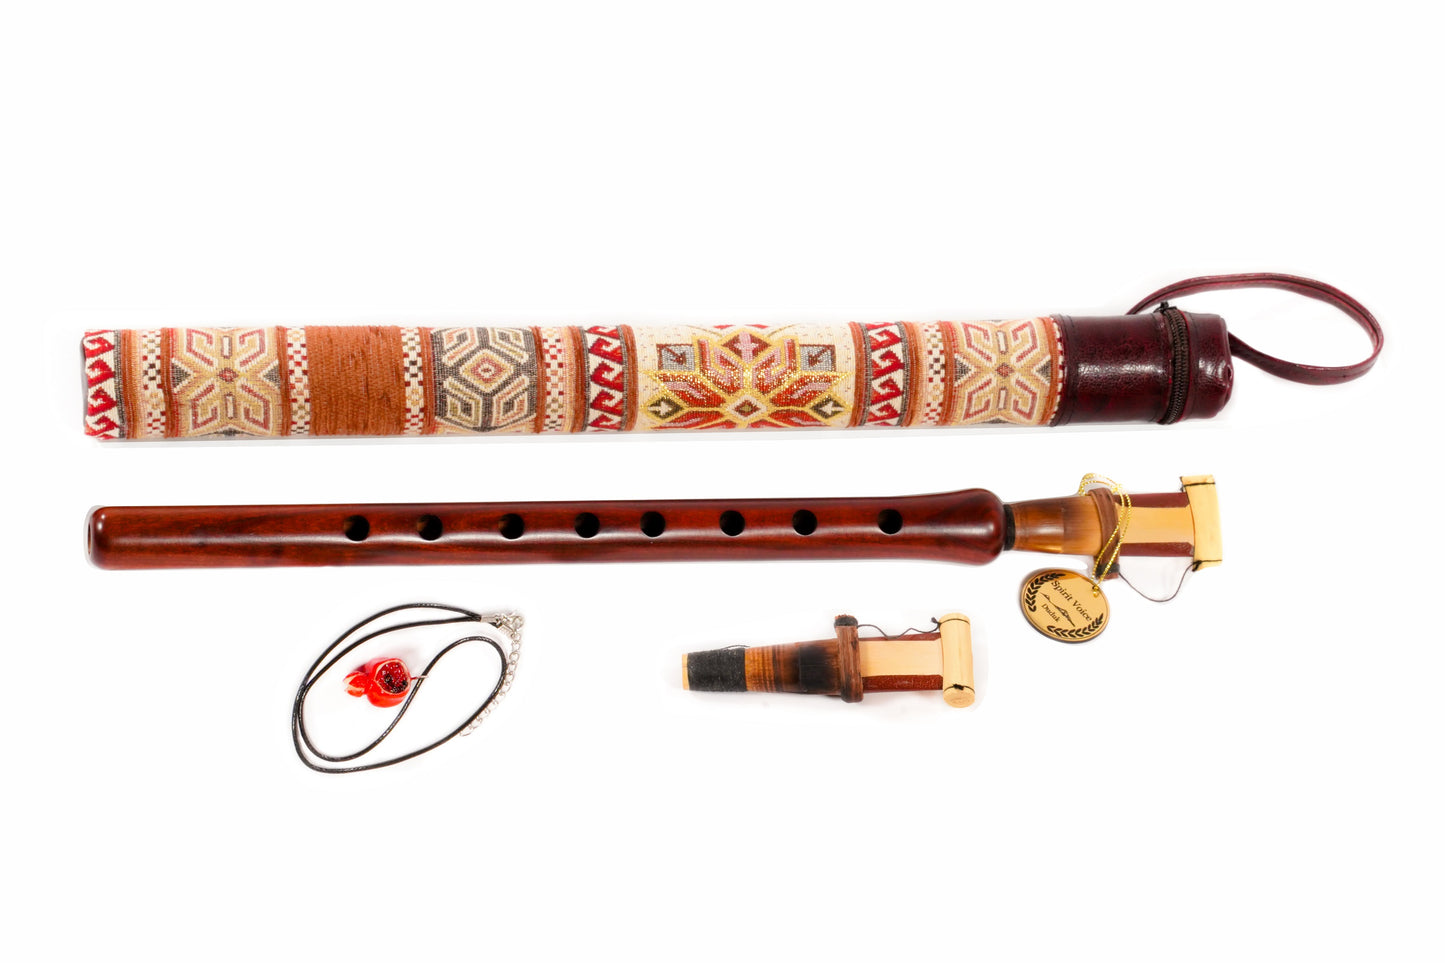 Հայկական երաժշտական ​​գործիք դուդուկ սկսնակների համար՝ 2 եղեգով և պատյանով